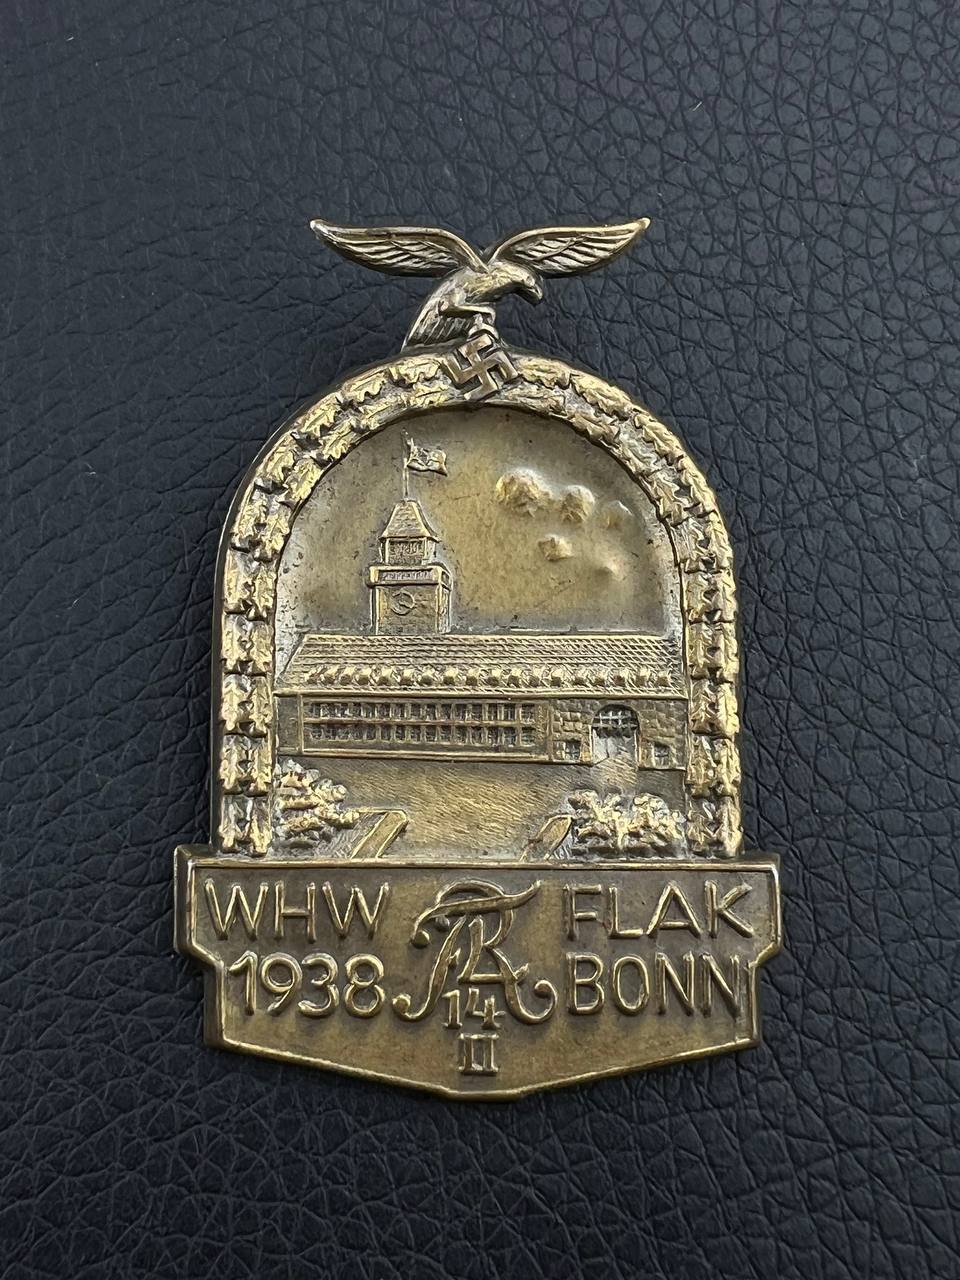 Значок Зимней помощи в честь 14-го зенитного полка. Бонн 1938 г. от Алексея С.